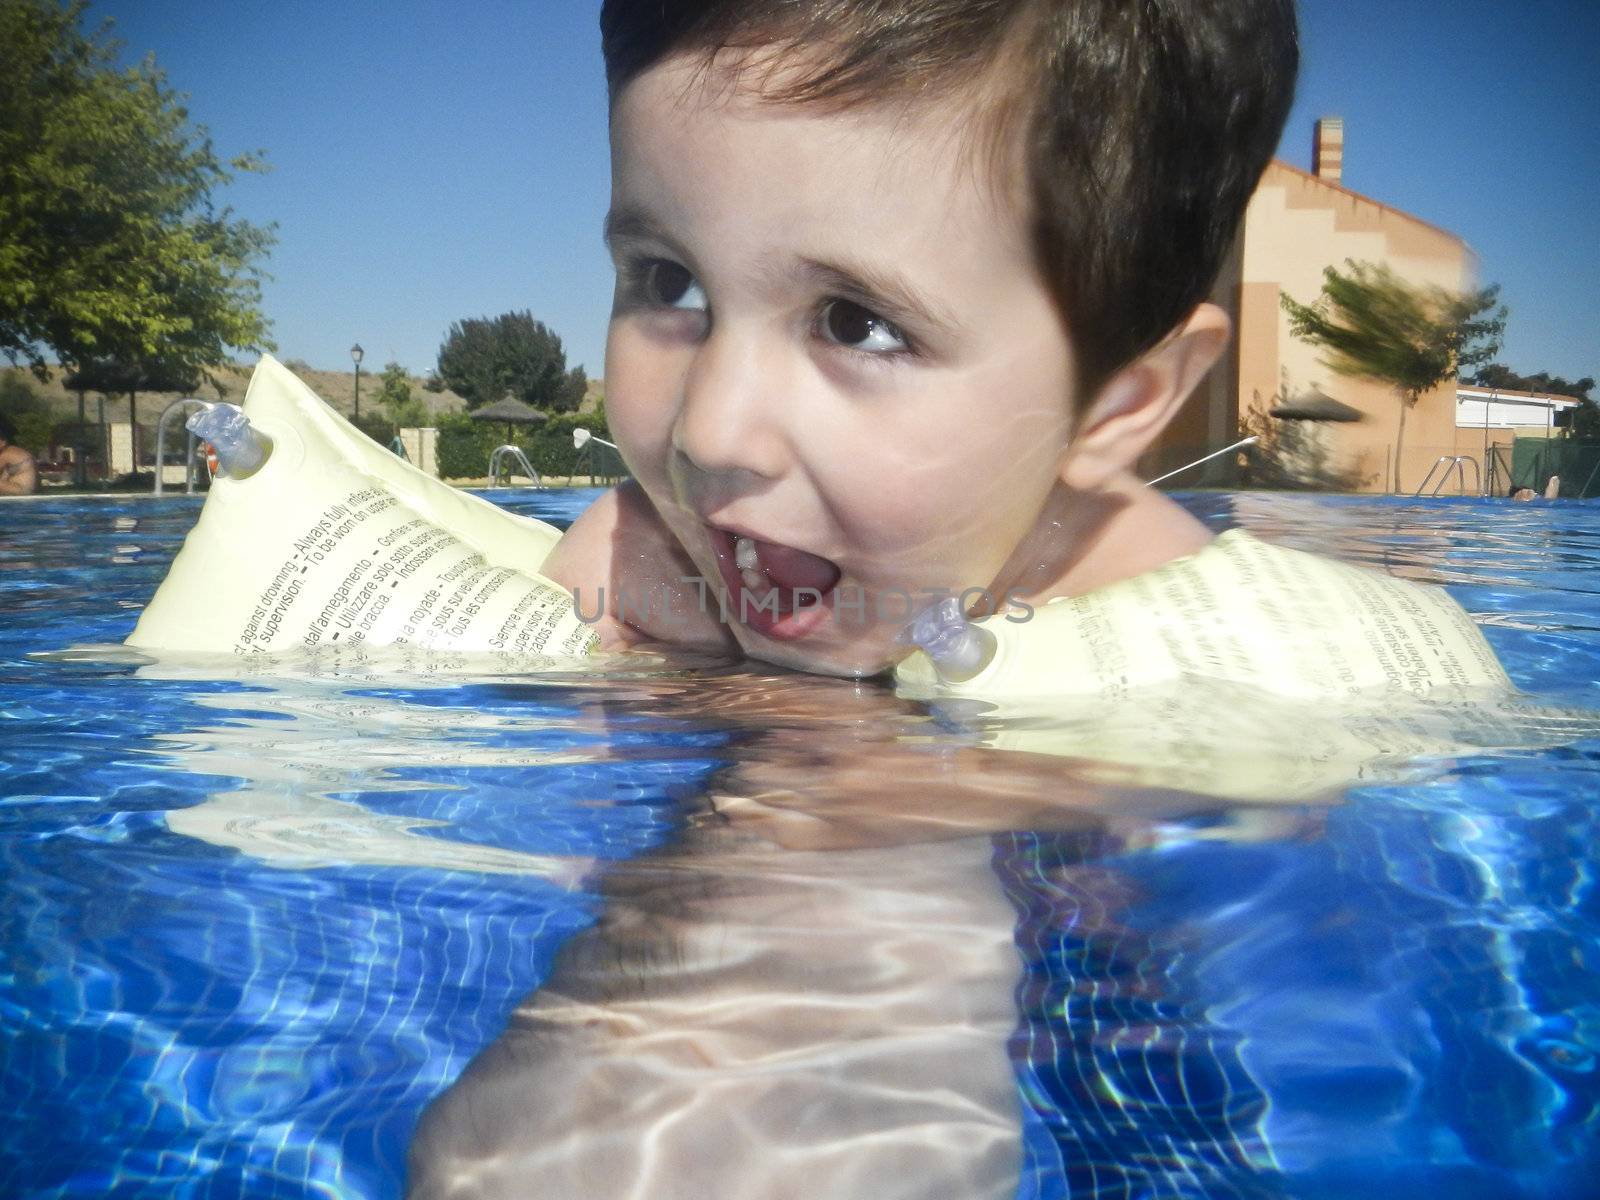 Boy swimming in a pool by FernandoCortes